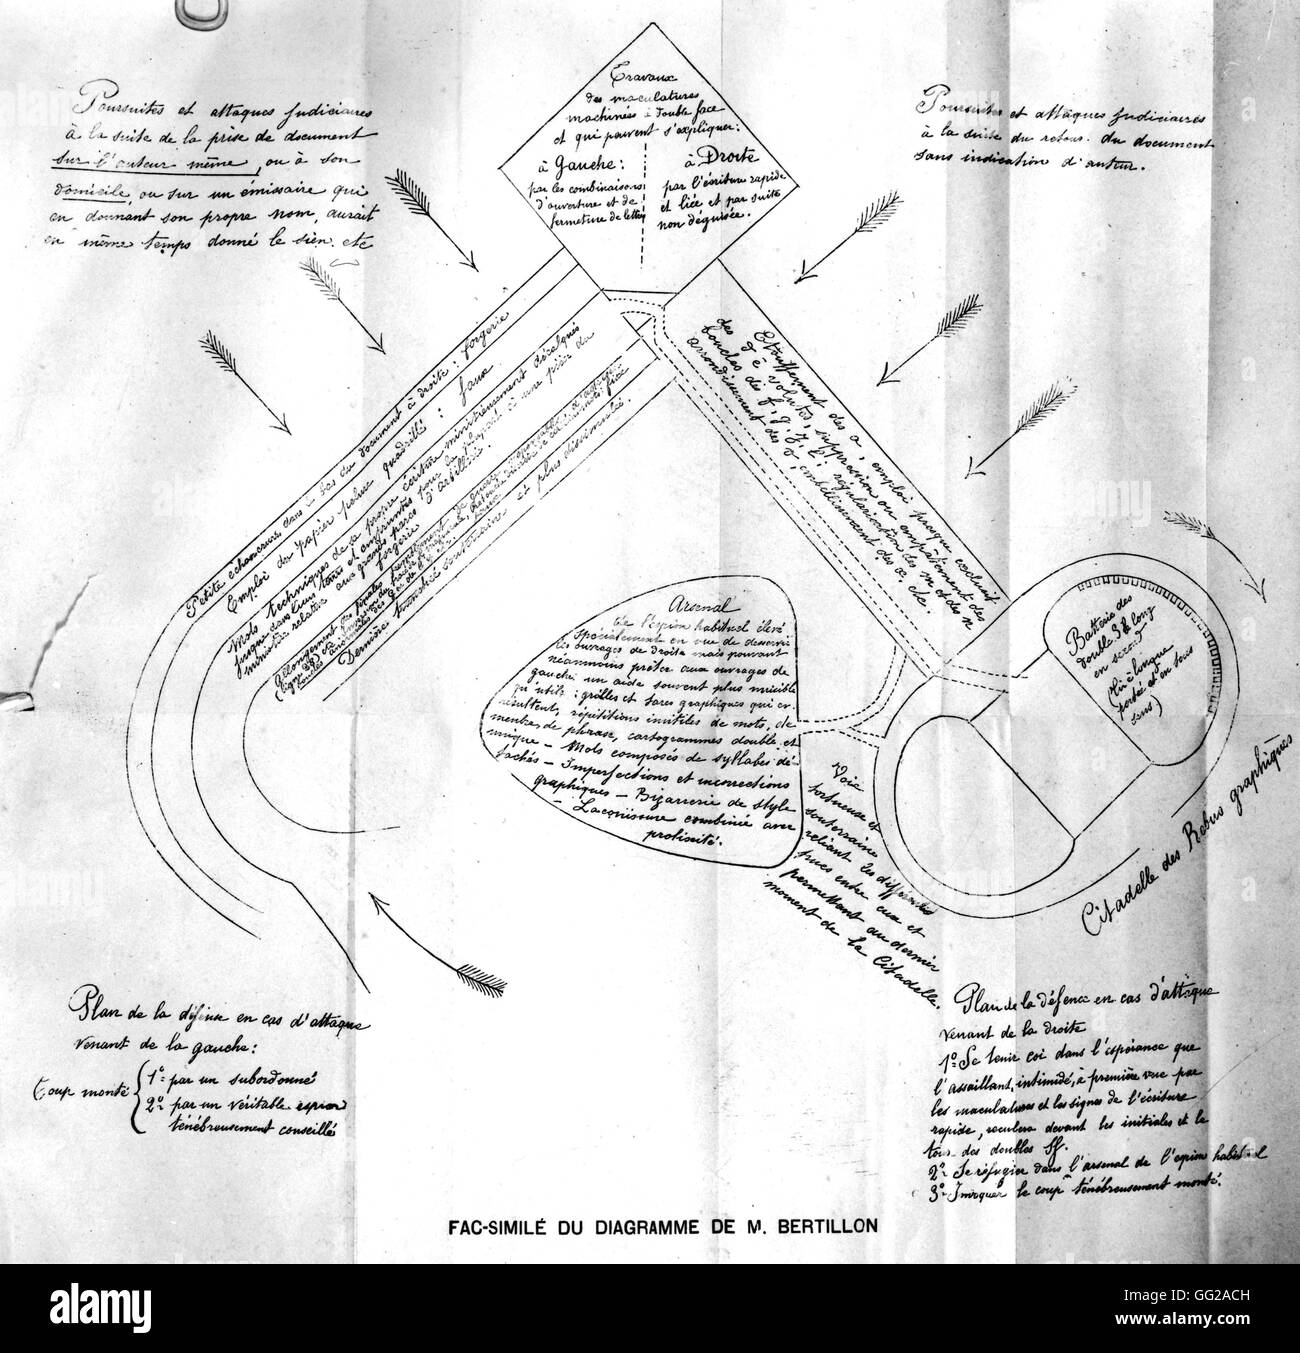 Procès de Rennes. Le diagramme de Bertillon (dans le cas d'une attaque) 19e siècle France - Affaire Dreyfus Banque D'Images